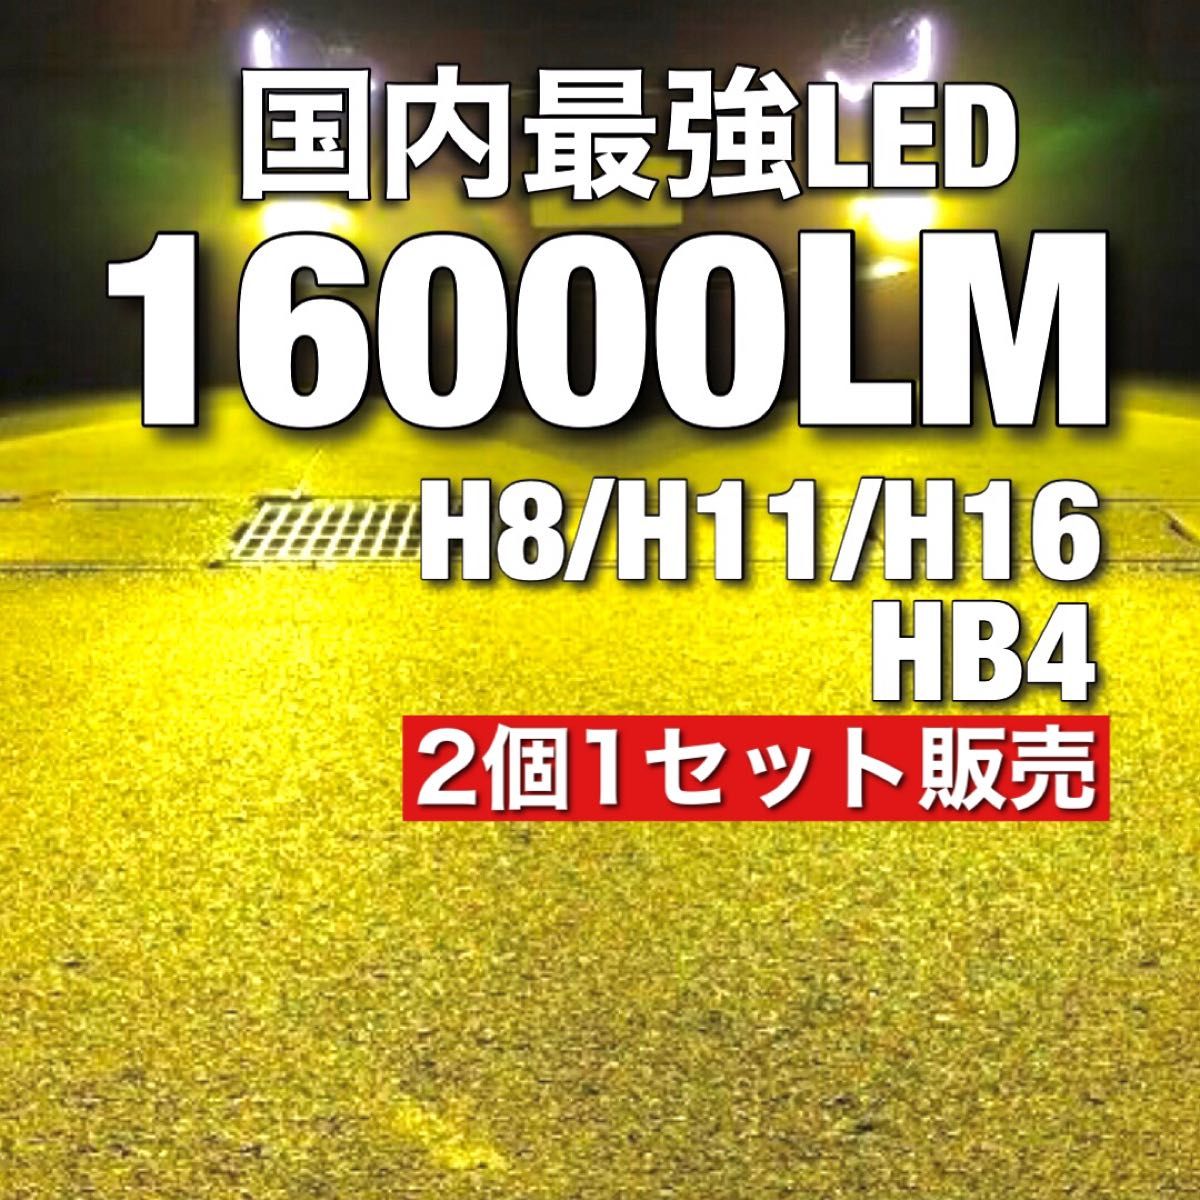 Led フォグ　16000lm 黄色 LEDフォグランプ スーパーイエロー トヨタ LEDフォグランプ 高品質 車検対応